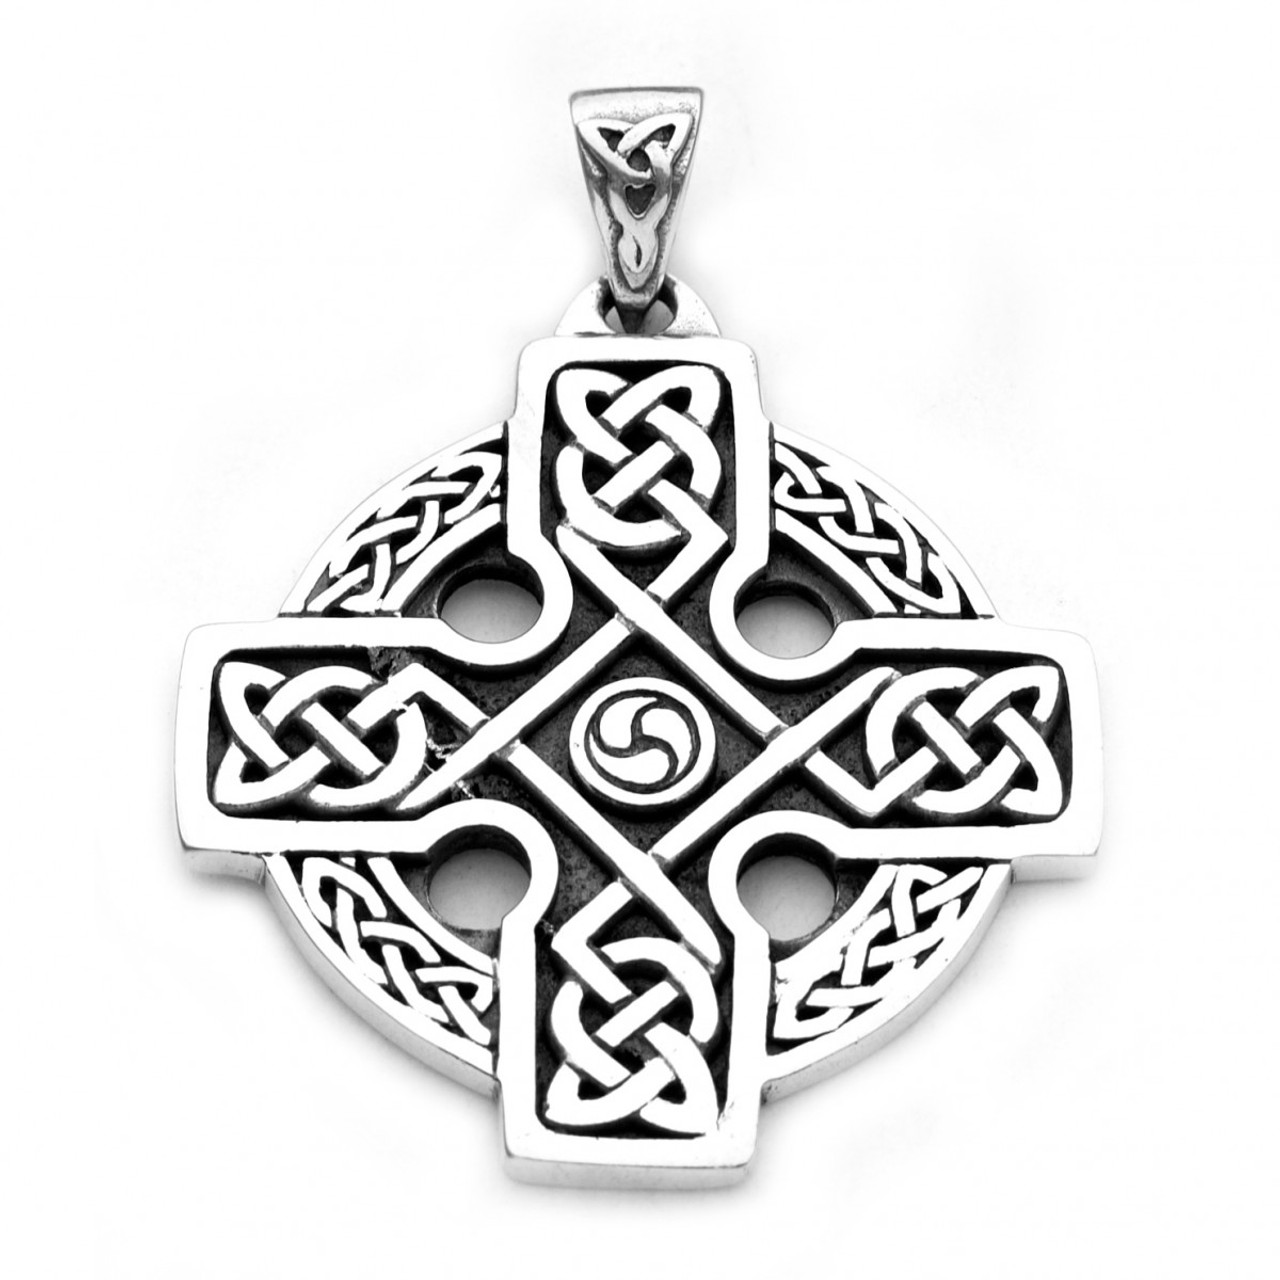 Кельтский крест равносторонний